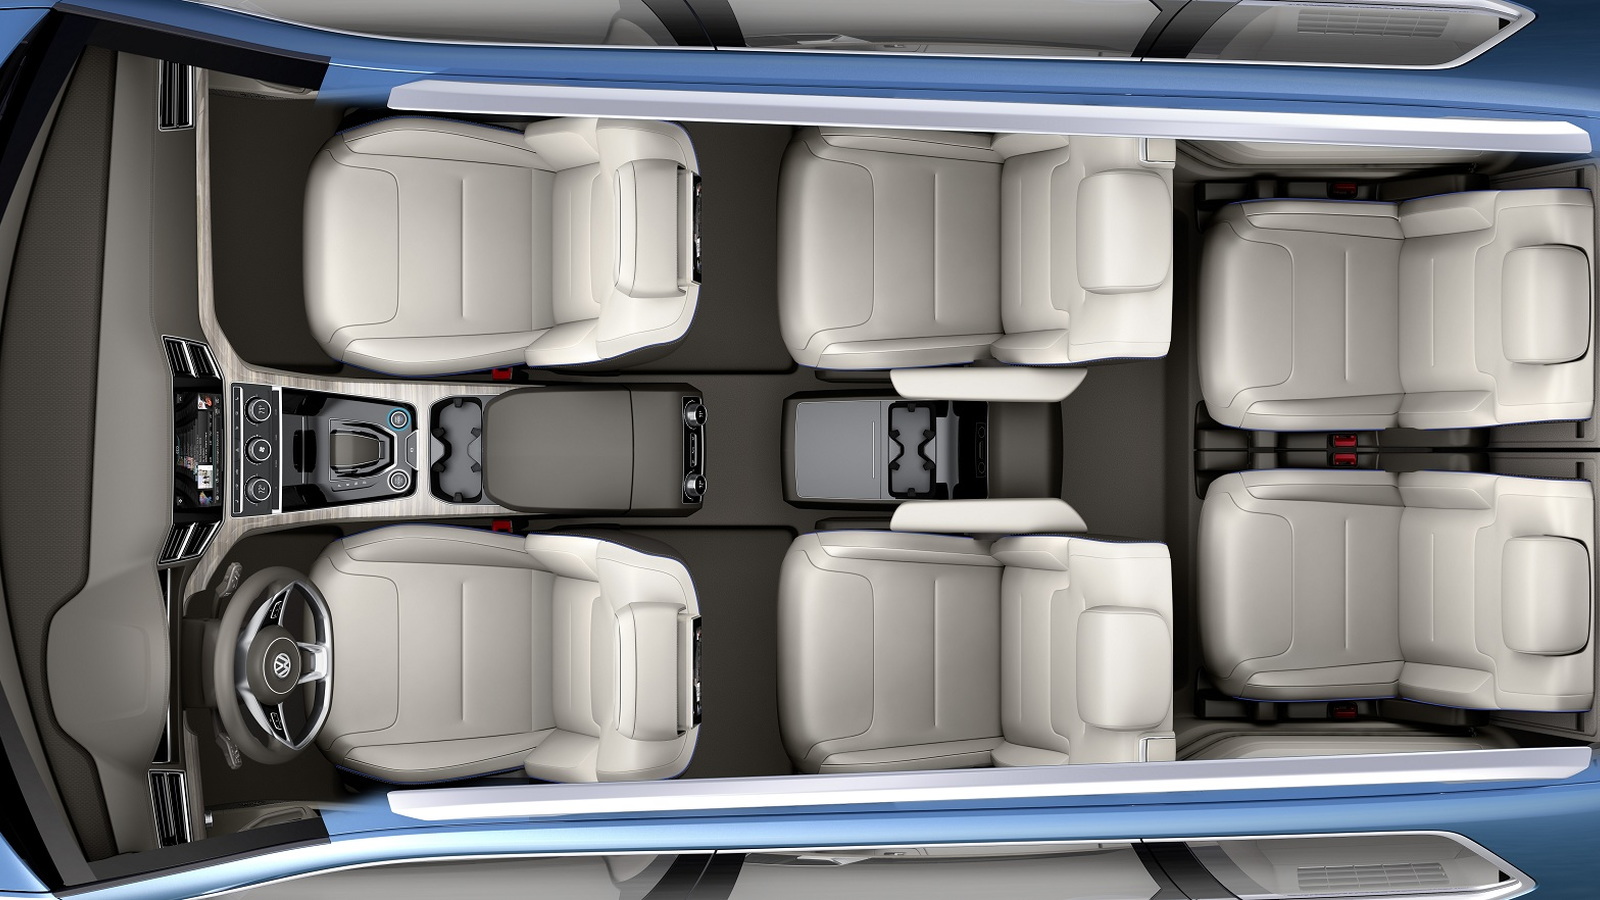 Volkswagen CrossBlue Concept - 2013 Detroit Auto Show